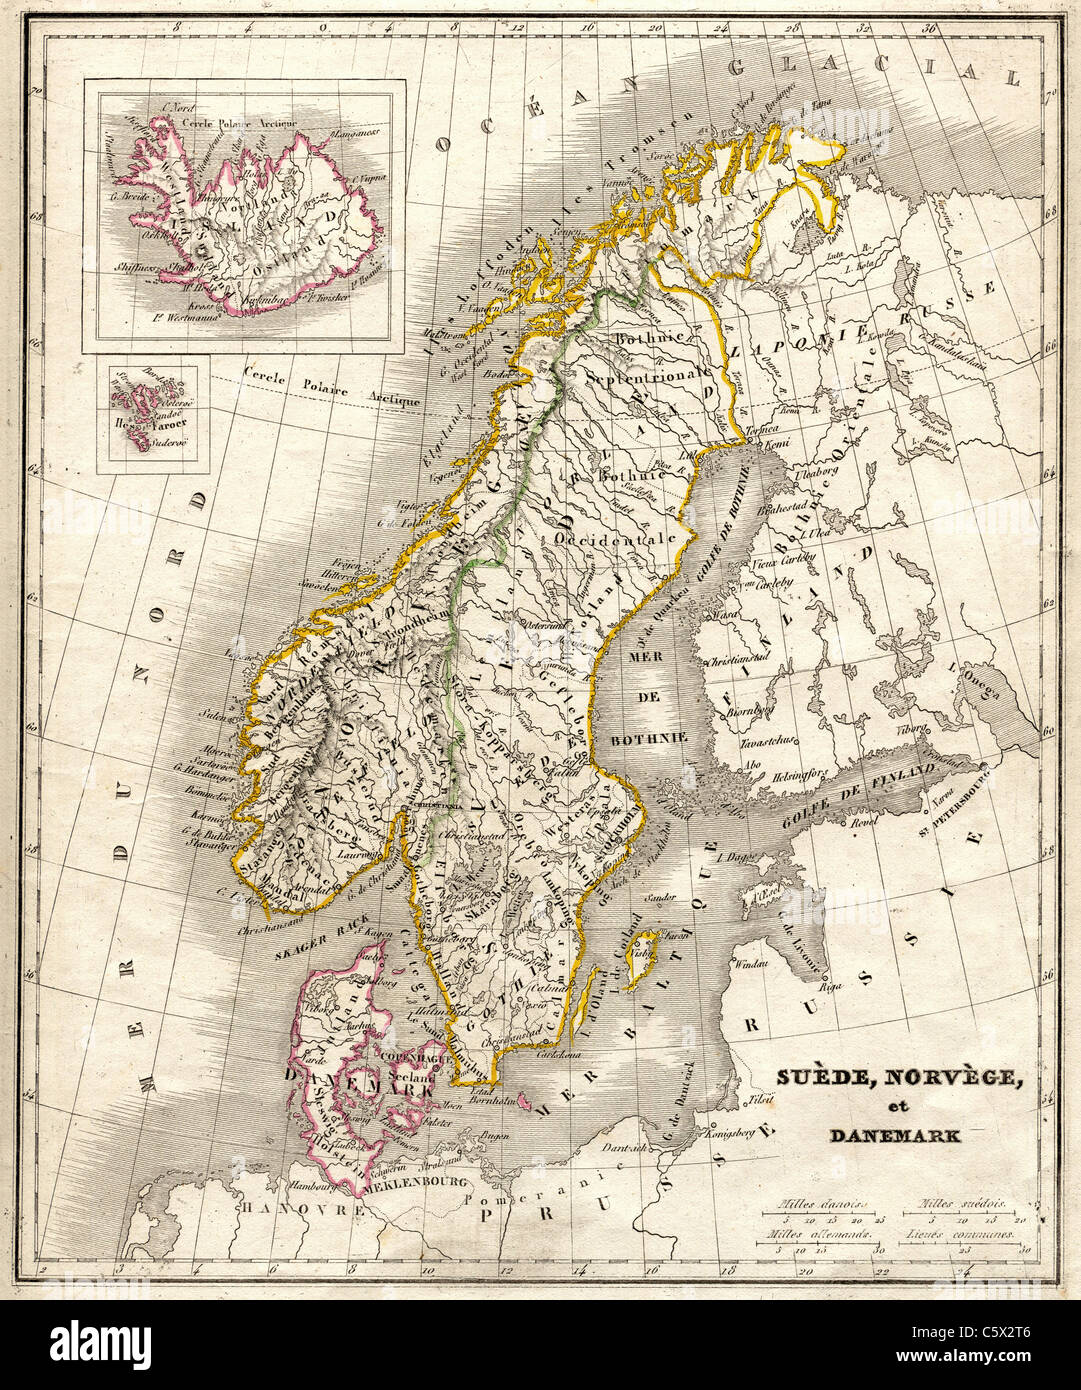 Scamosciato, Norvege, et Danemark (Svezia, Norvegia e Danimarca)antiquario mappa da "Atlas Universel de Geographie Ancienne e Moderne' dalla C.V. Monin Foto Stock